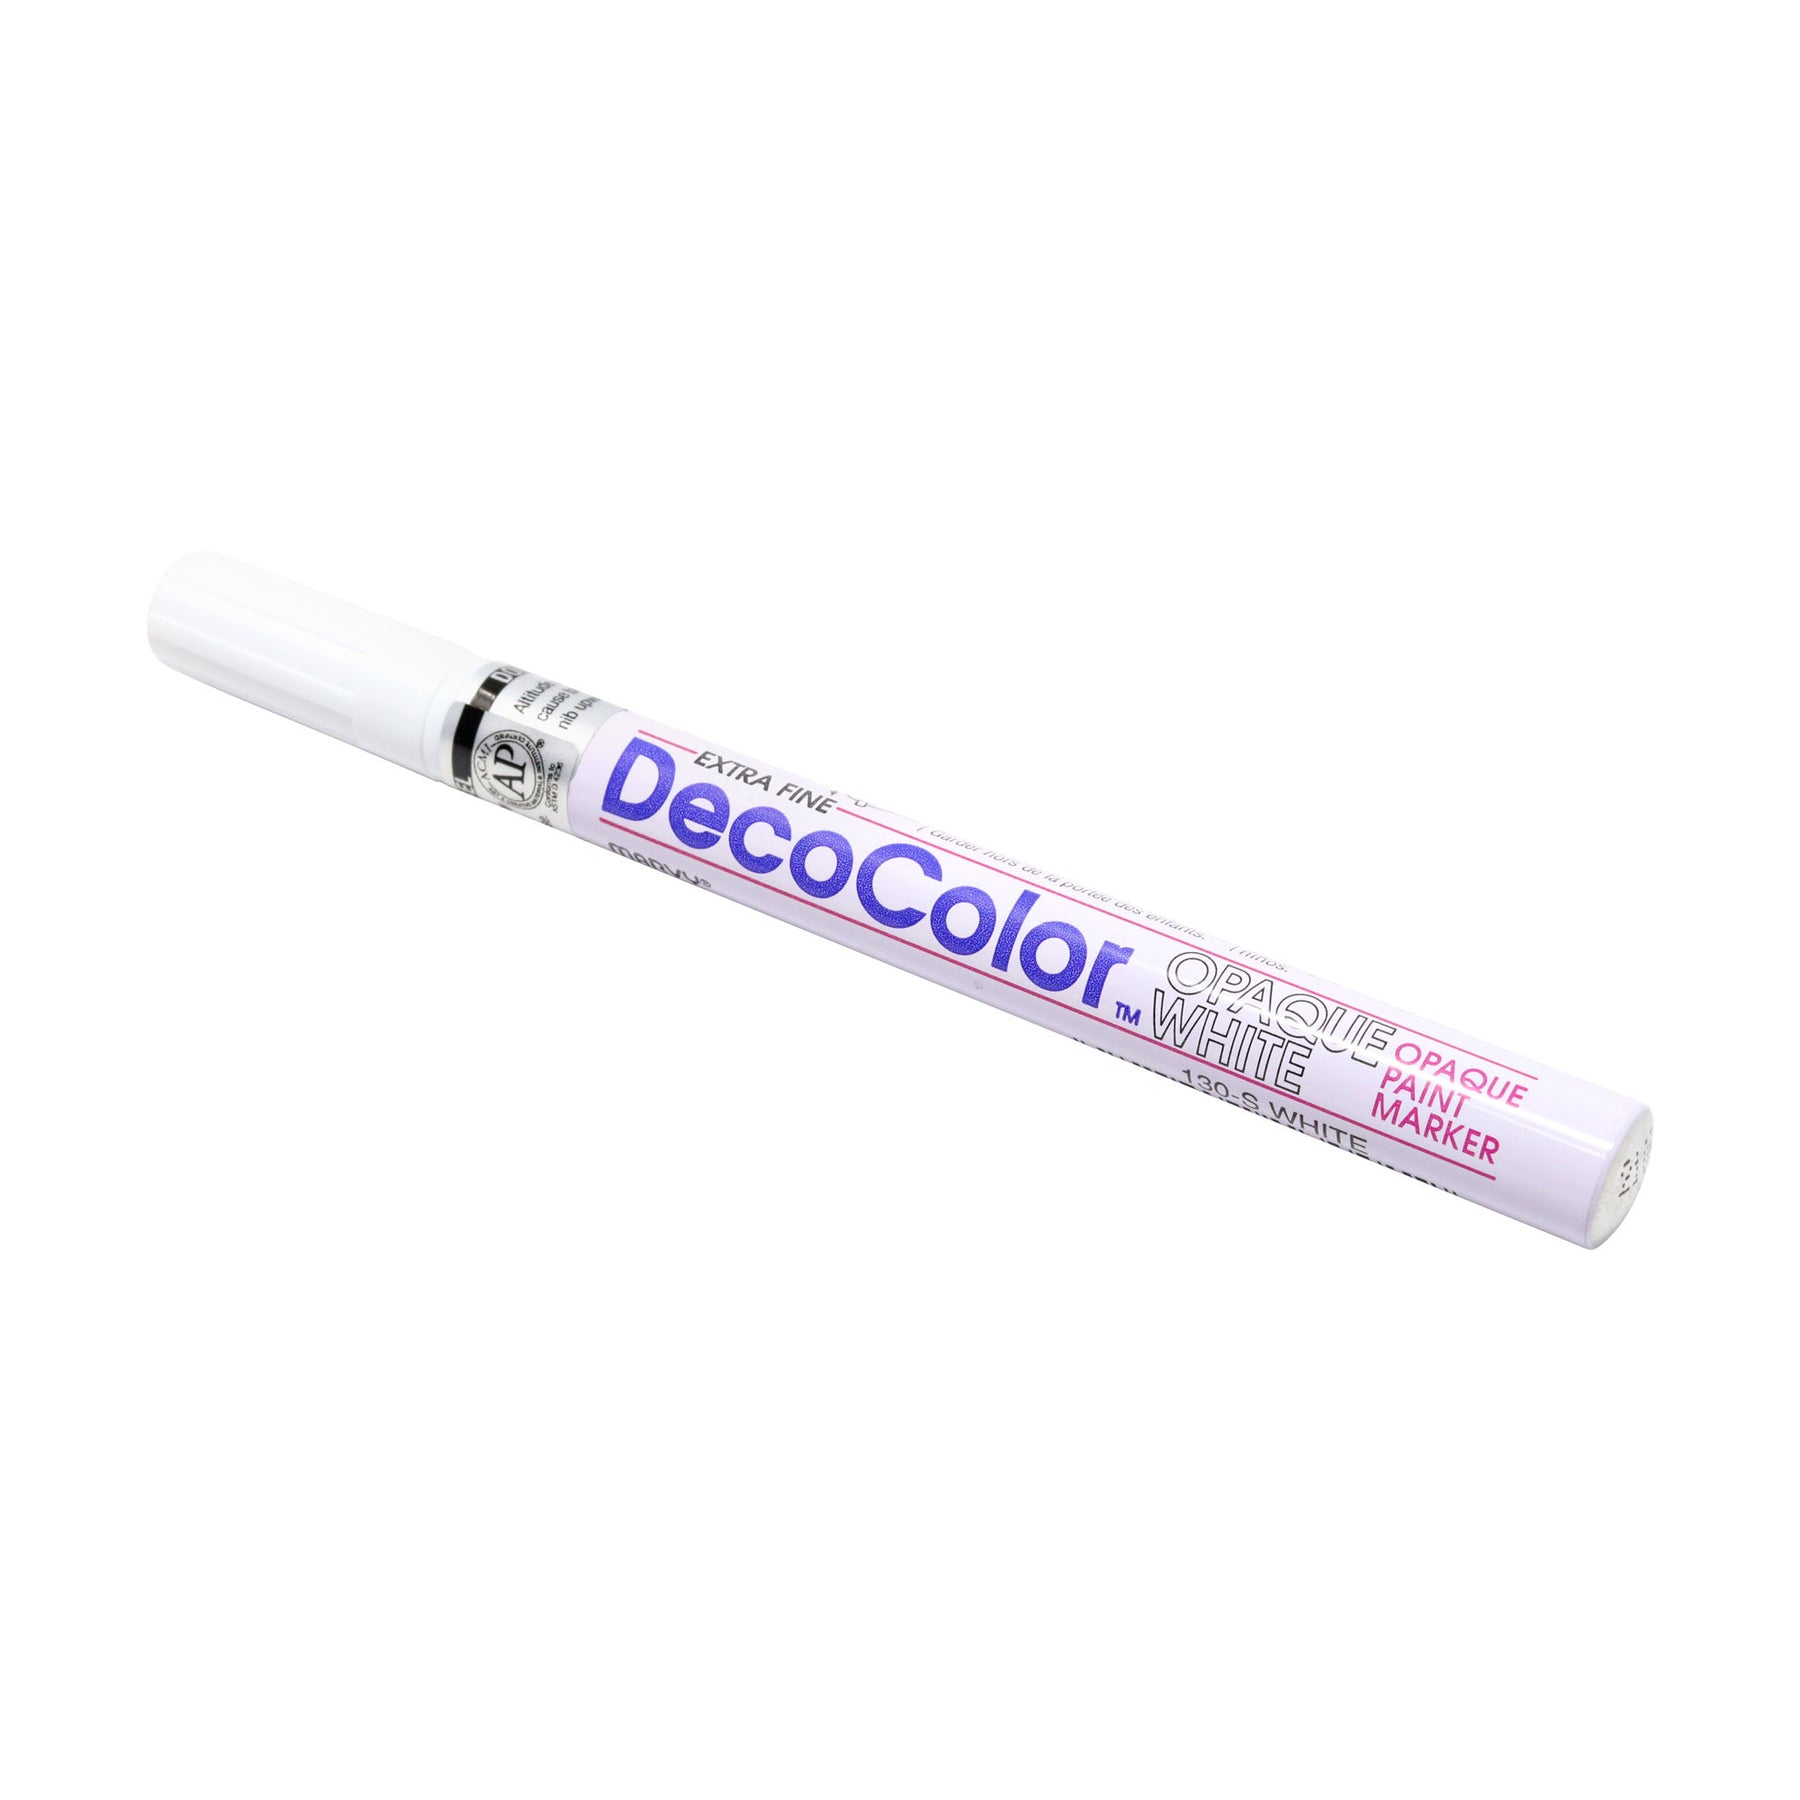 Decocolor Paint Pens - Decocolor Paint Marker Swatches 